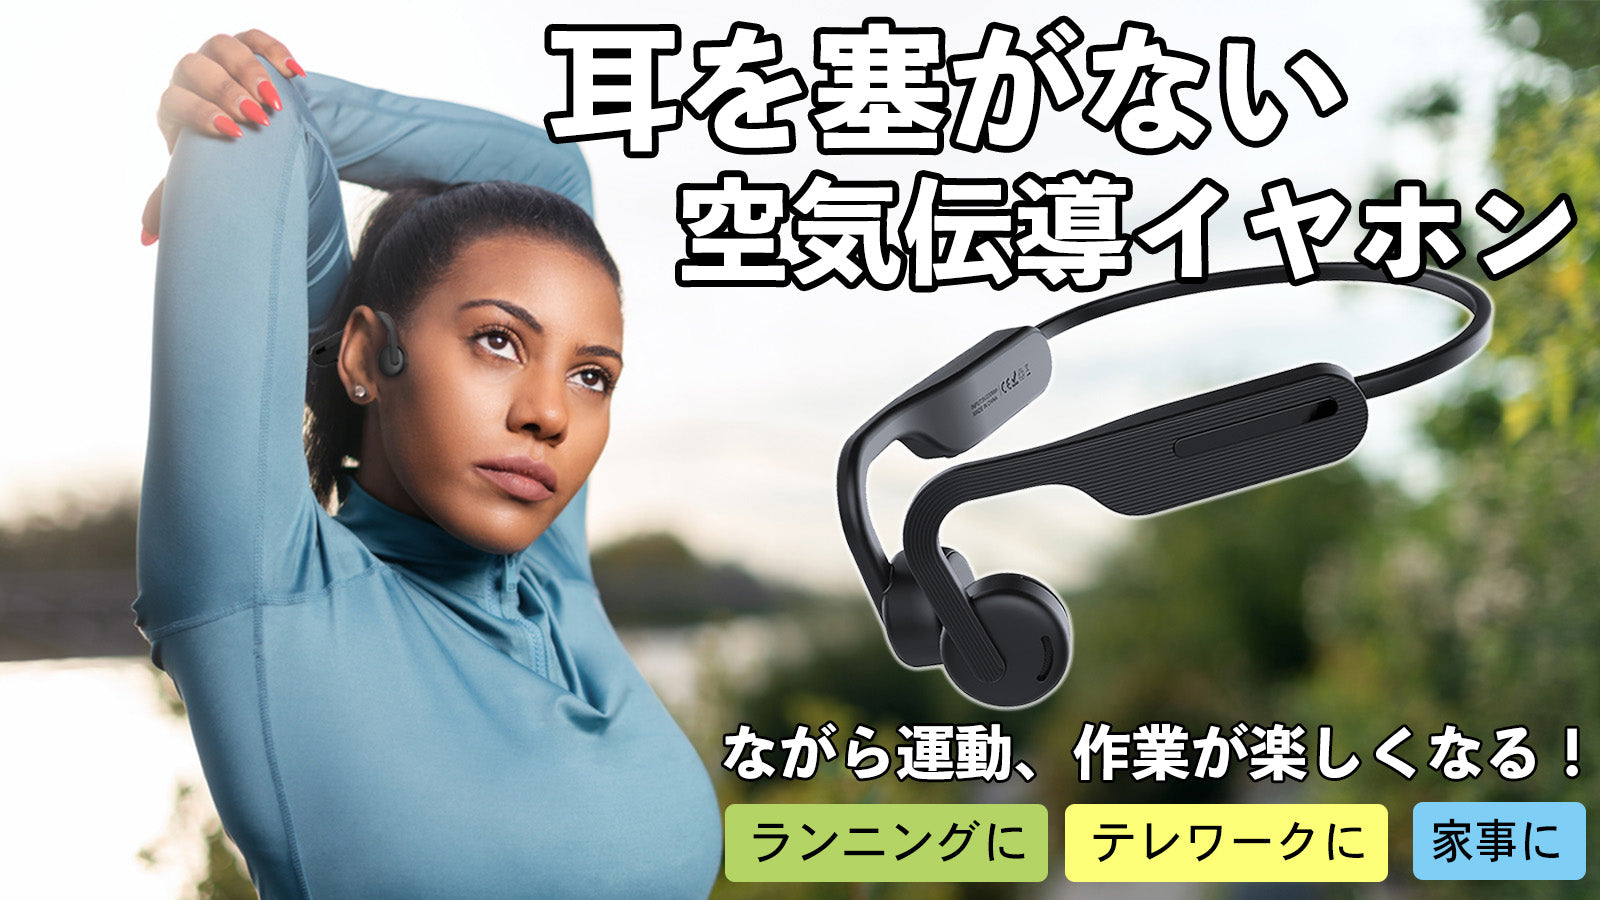 空気伝導 OPEN EAR型ワイヤレス イヤホン 高音質、連続15時間再生可能! – Makuake STORE